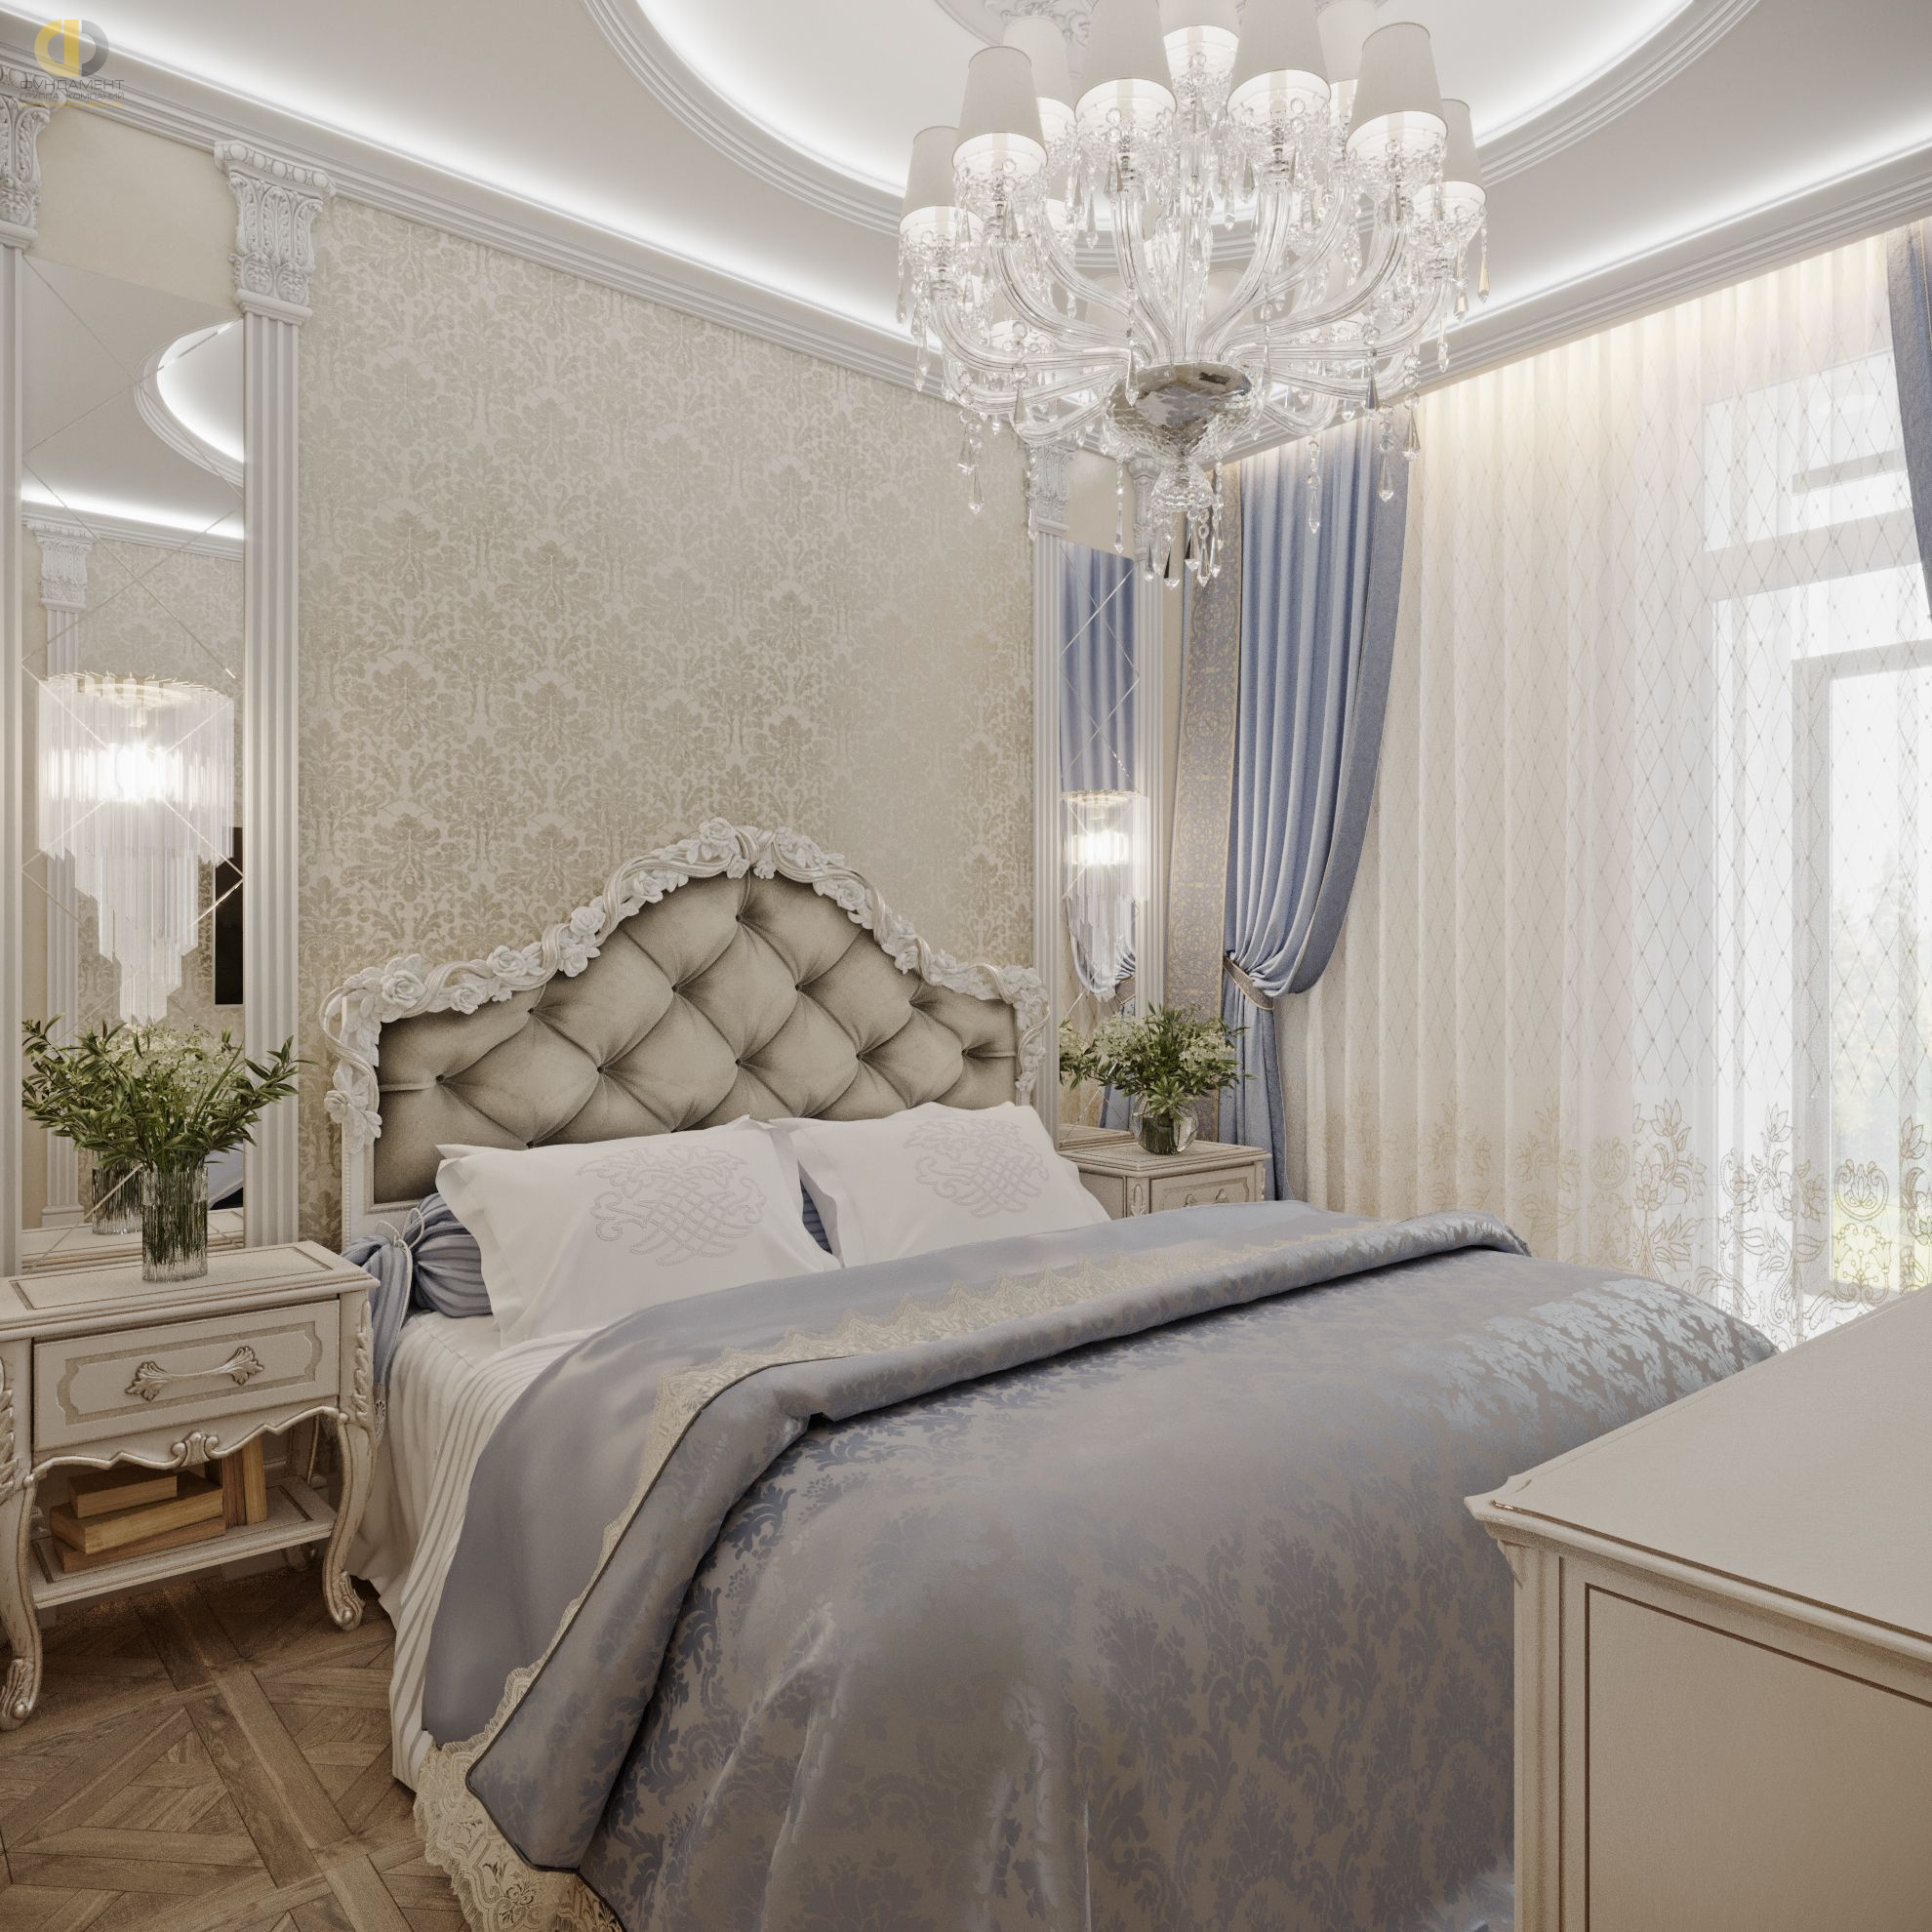 Спальня в стиле дизайна классицизм по адресу г. Москва, Хорошевское шоссе, дом 25А, стр. 1, 2021 года